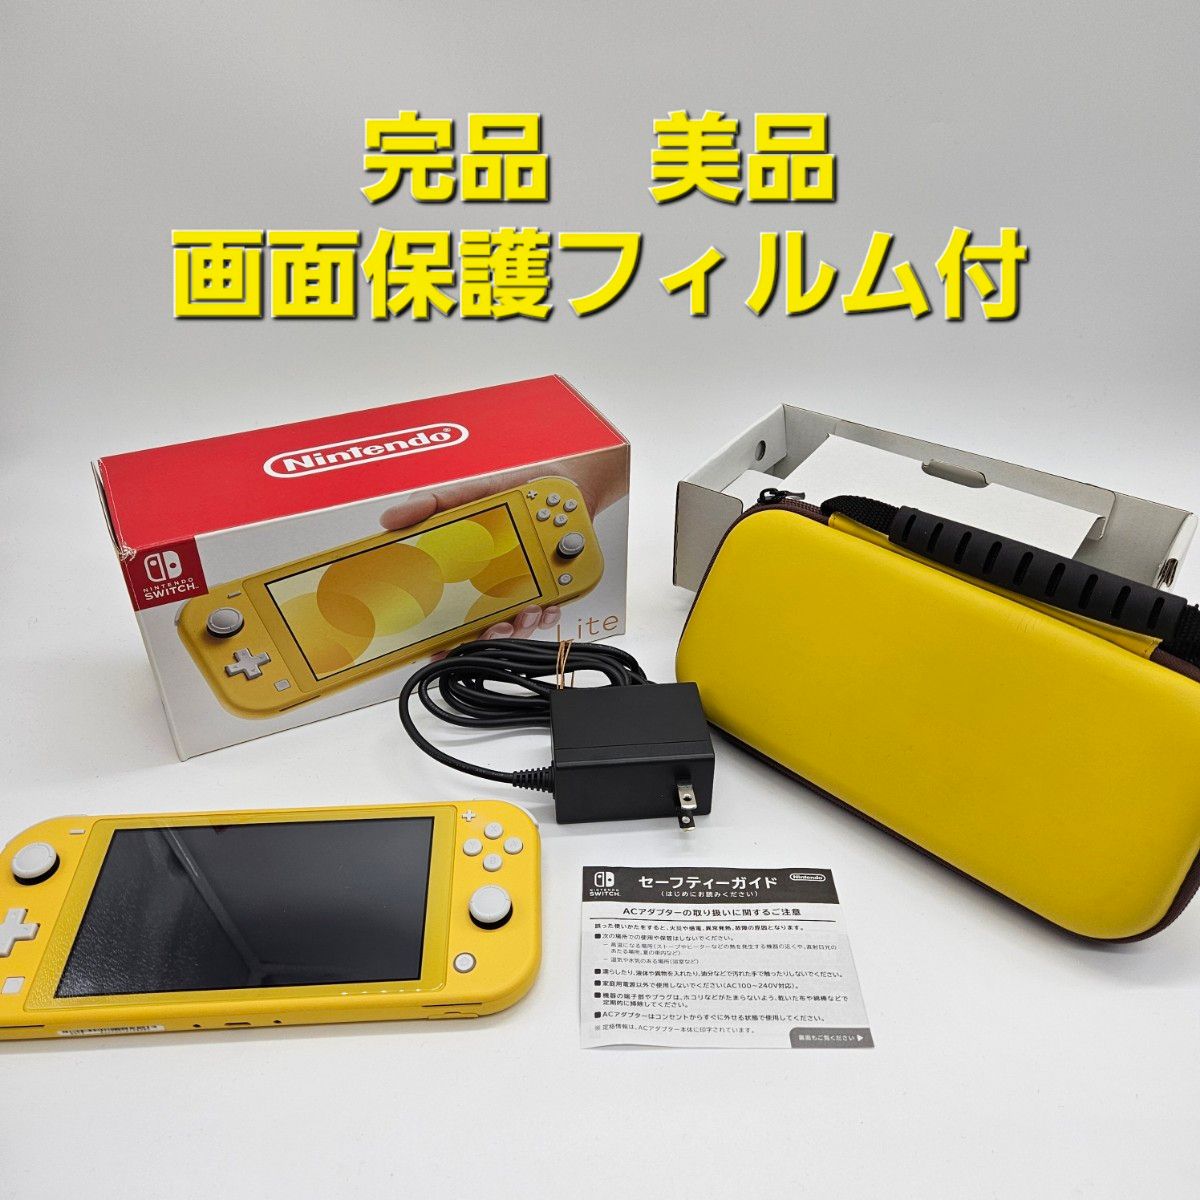 ニンテンドースイッチライト Nintendo Switch Lite 本体 イエロー